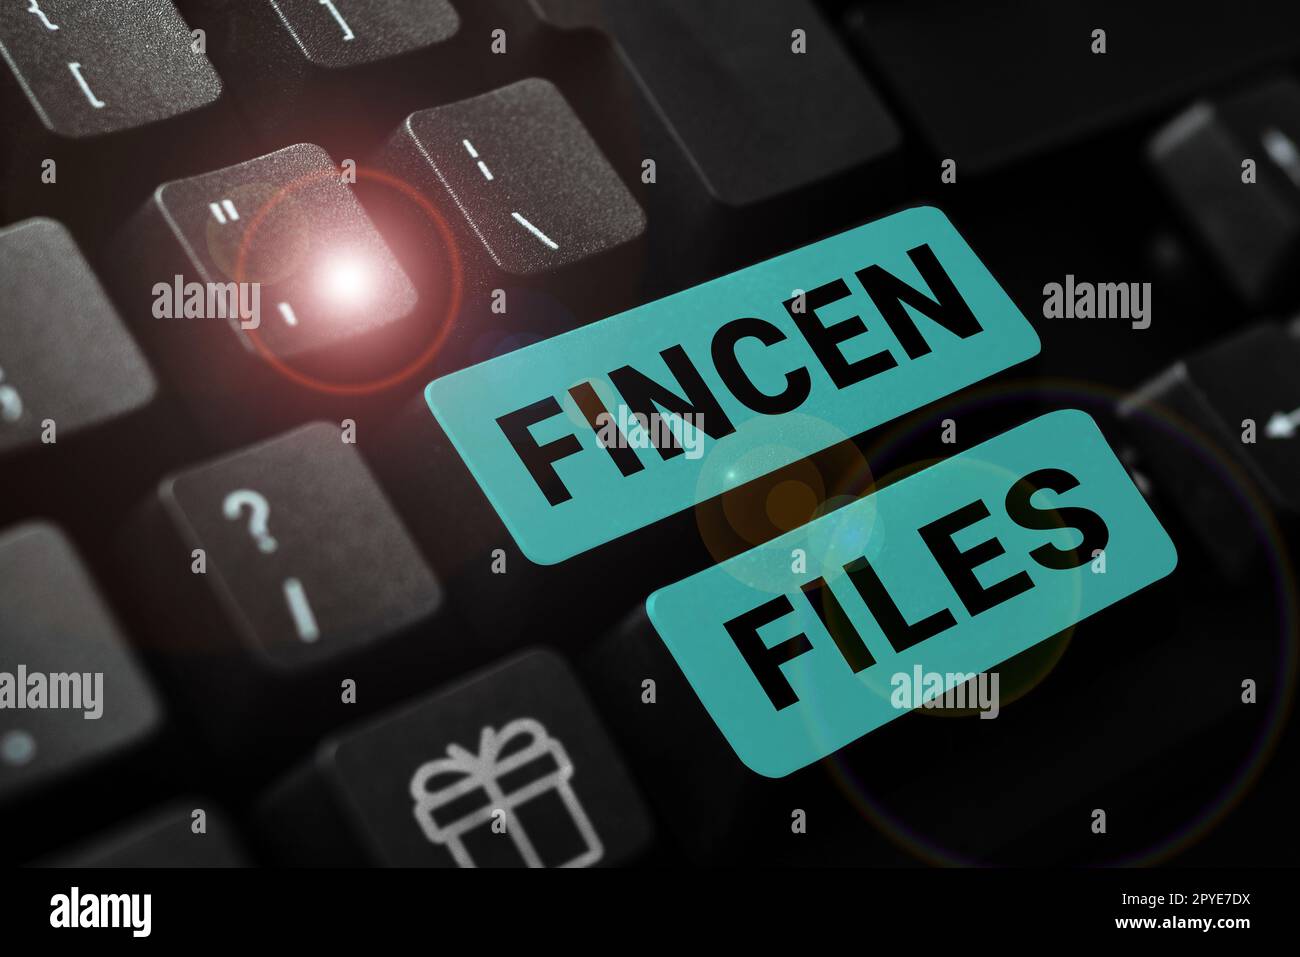 Symbole de texte indiquant les fichiers FinCEN. Approche commerciale transactions d'actifs et de passifs financiers Banque D'Images